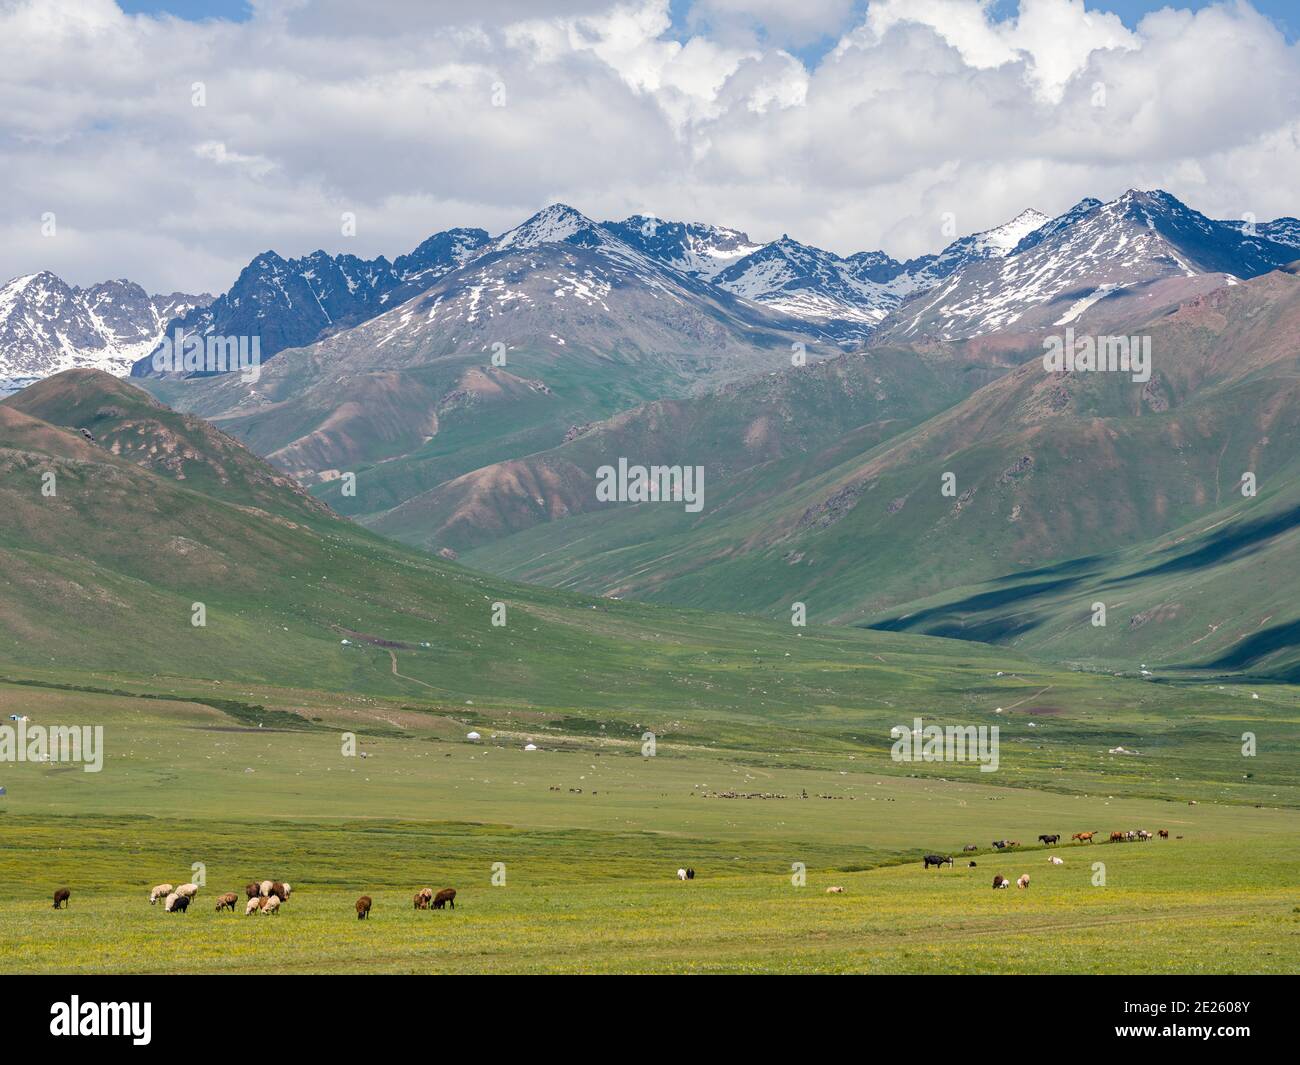 Sommerweide mit traditionellen Jurten. Die Suusamyr Ebene, ein Hochtal in den Tien Shan Bergen. Asien, Zentralasien, Kirgisistan Stockfoto